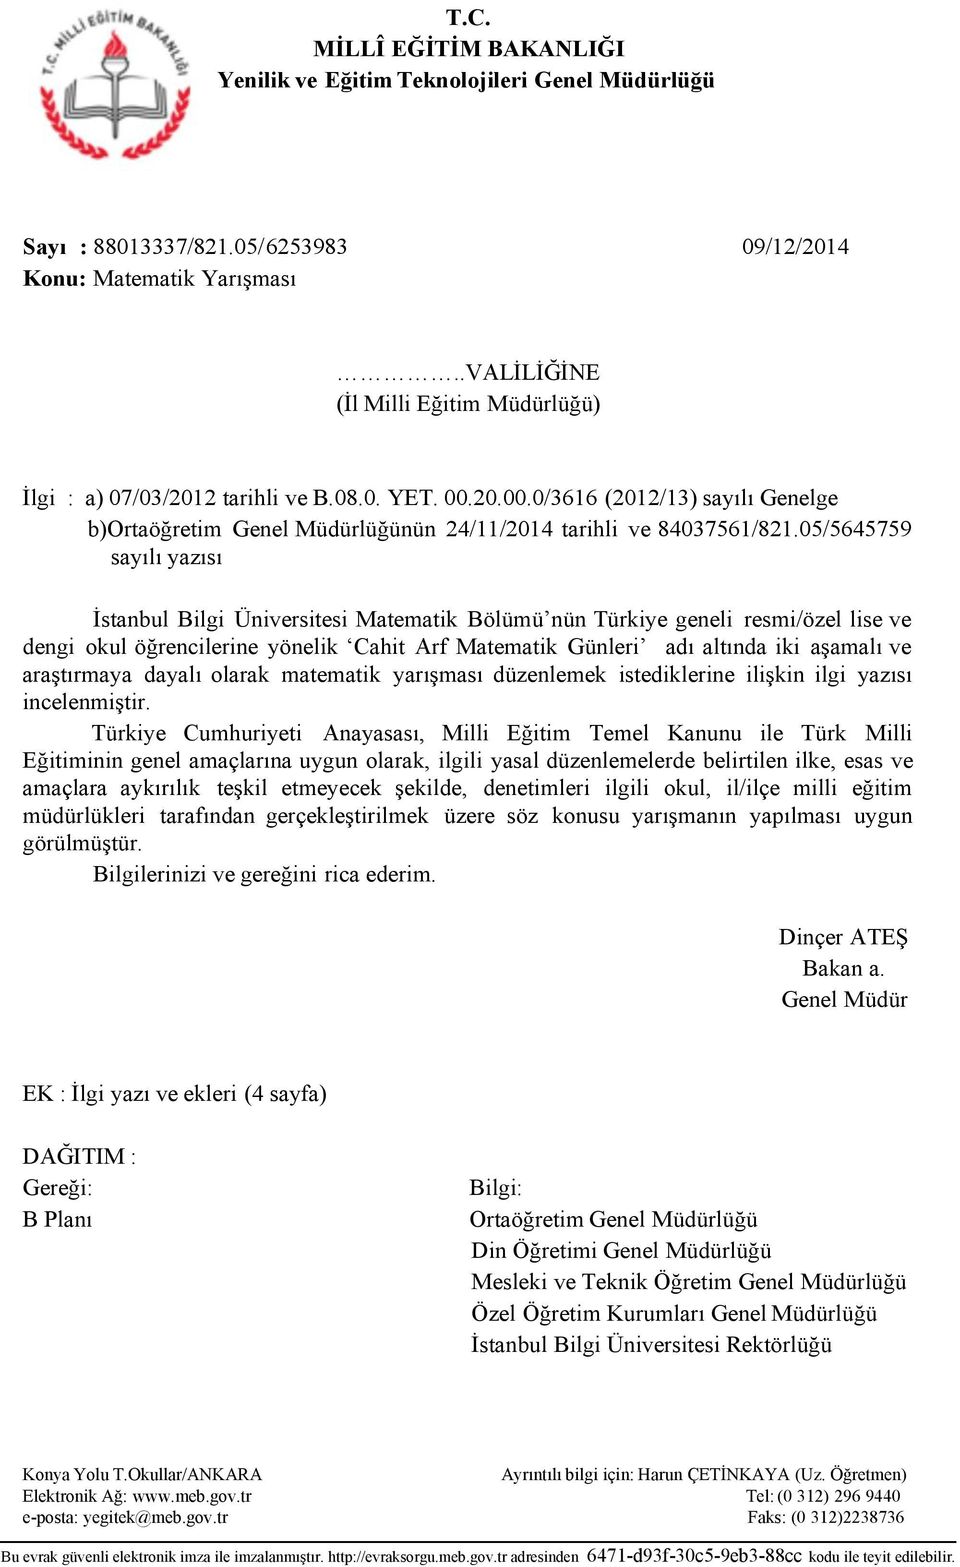 05/5645759 syılı yzısı İstnbul Bilgi Üniversitesi Mtemtik Bölümü nün Türkiye geneli resmi/özel lise ve dengi okul öğrencilerine yönelik Chit Arf Mtemtik Günleri dı ltınd iki şmlı ve rştırmy dylı olrk